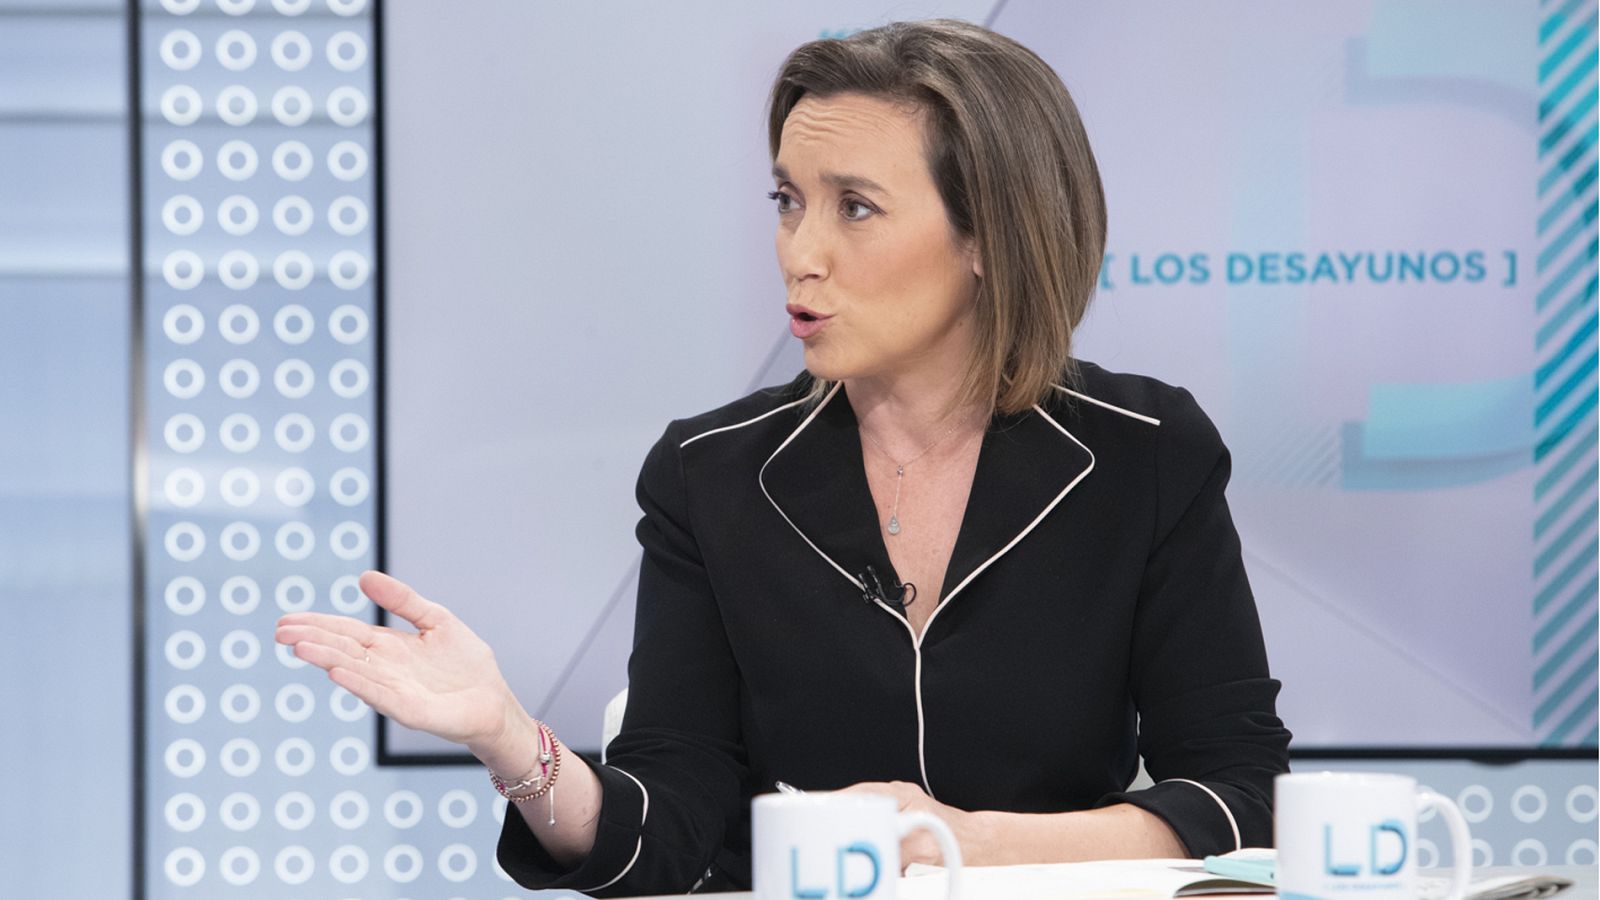 Investidura: Gamarra asegura que el PP no se está planteando una gran coalición con el PSOE como sugirió Feijóo - RTVE.es